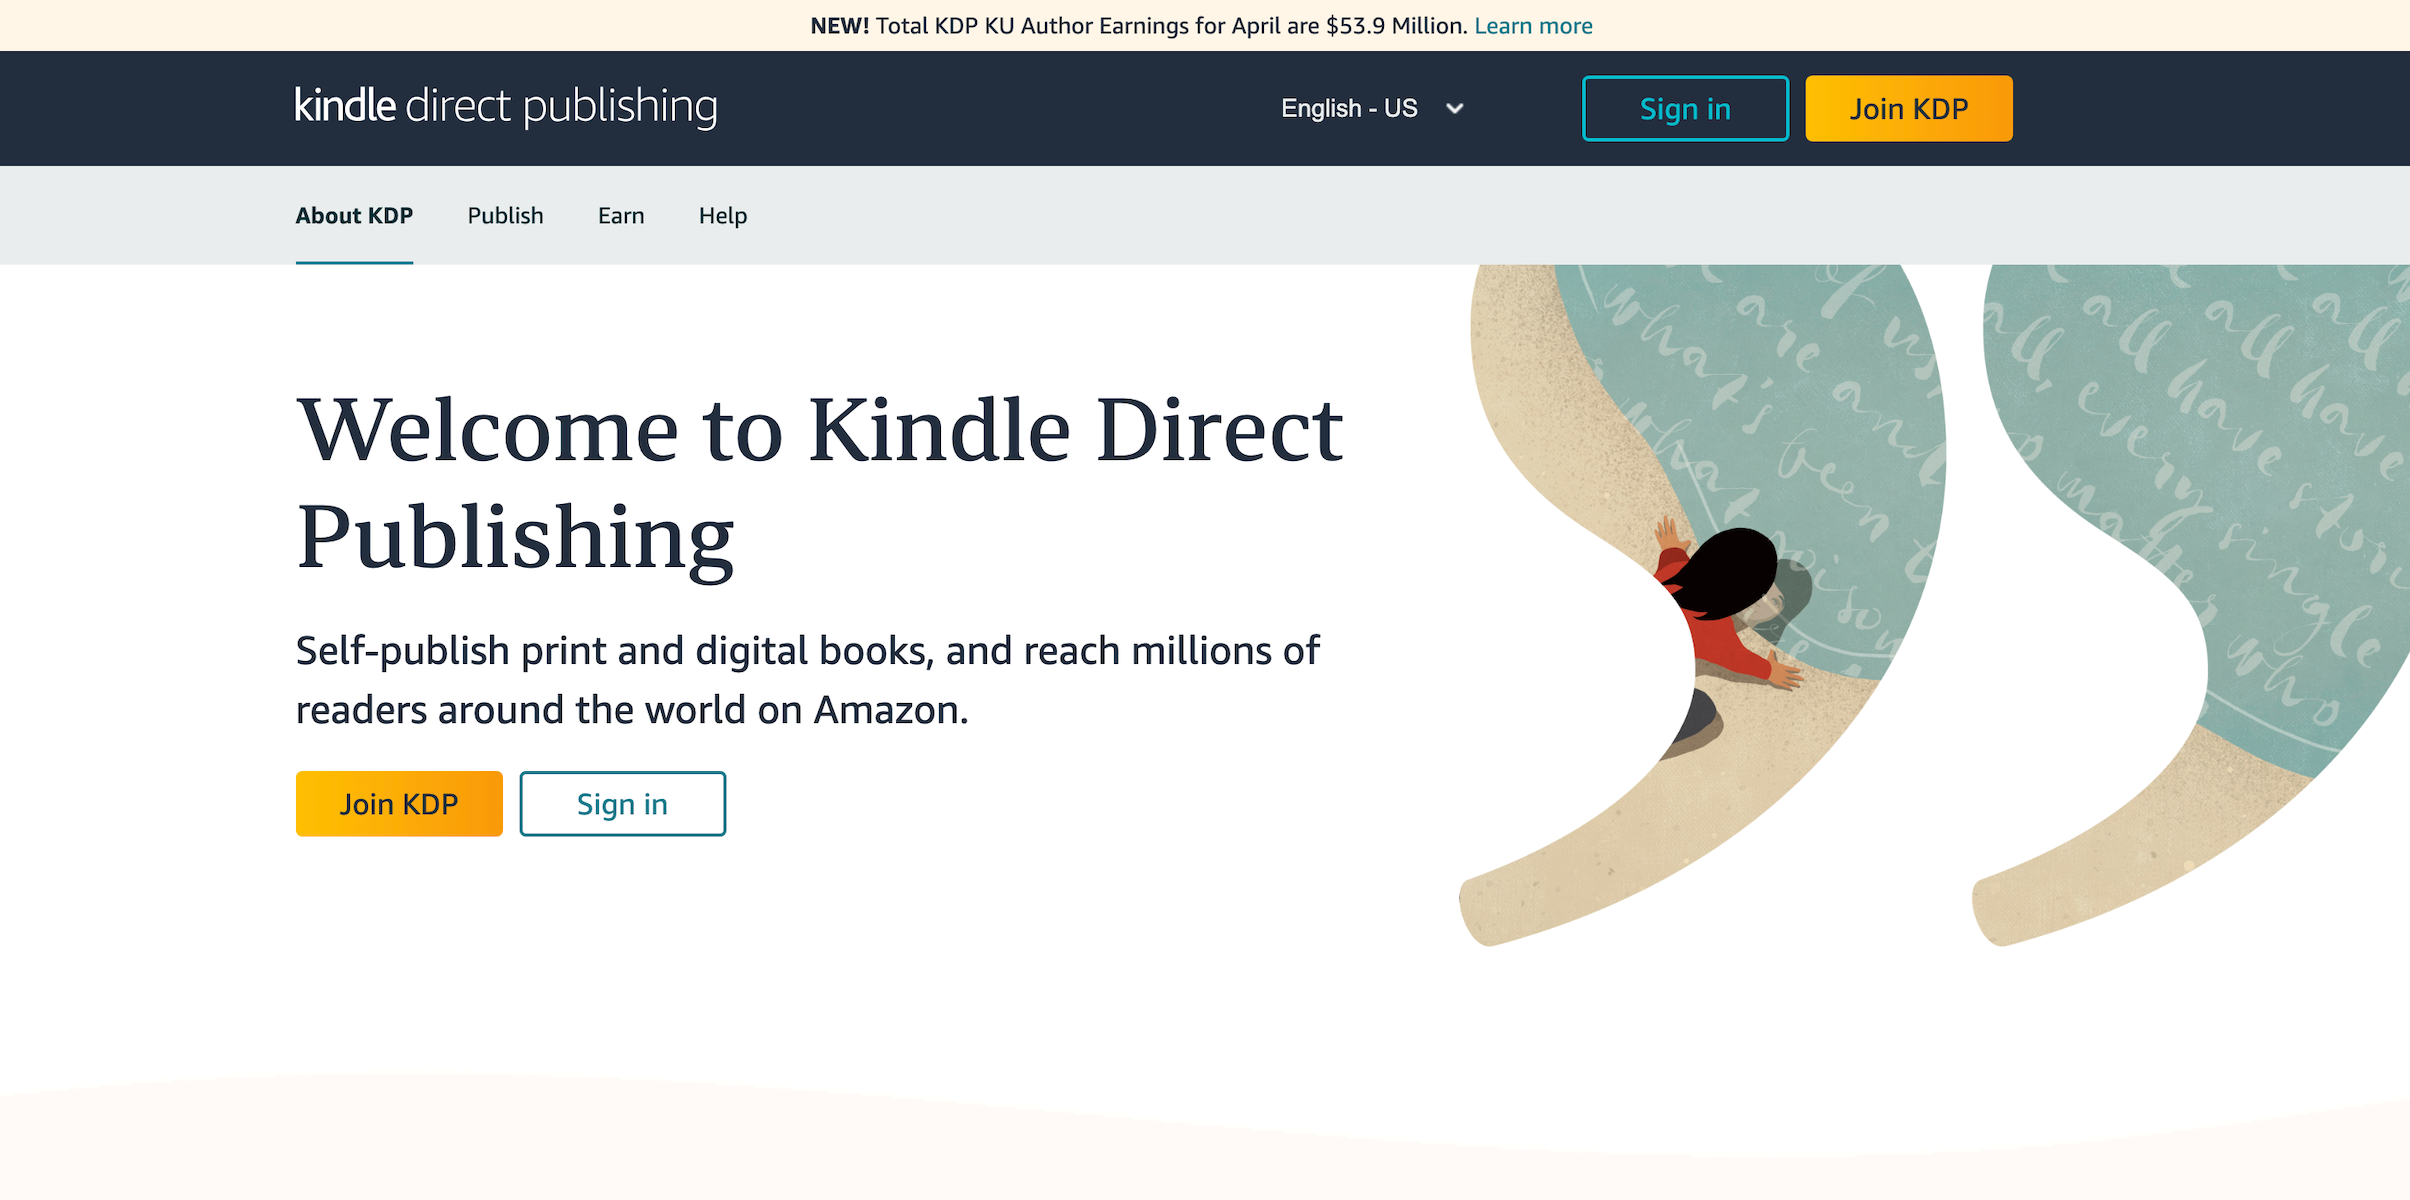 Amazon Kindle Direct Publishing homepage